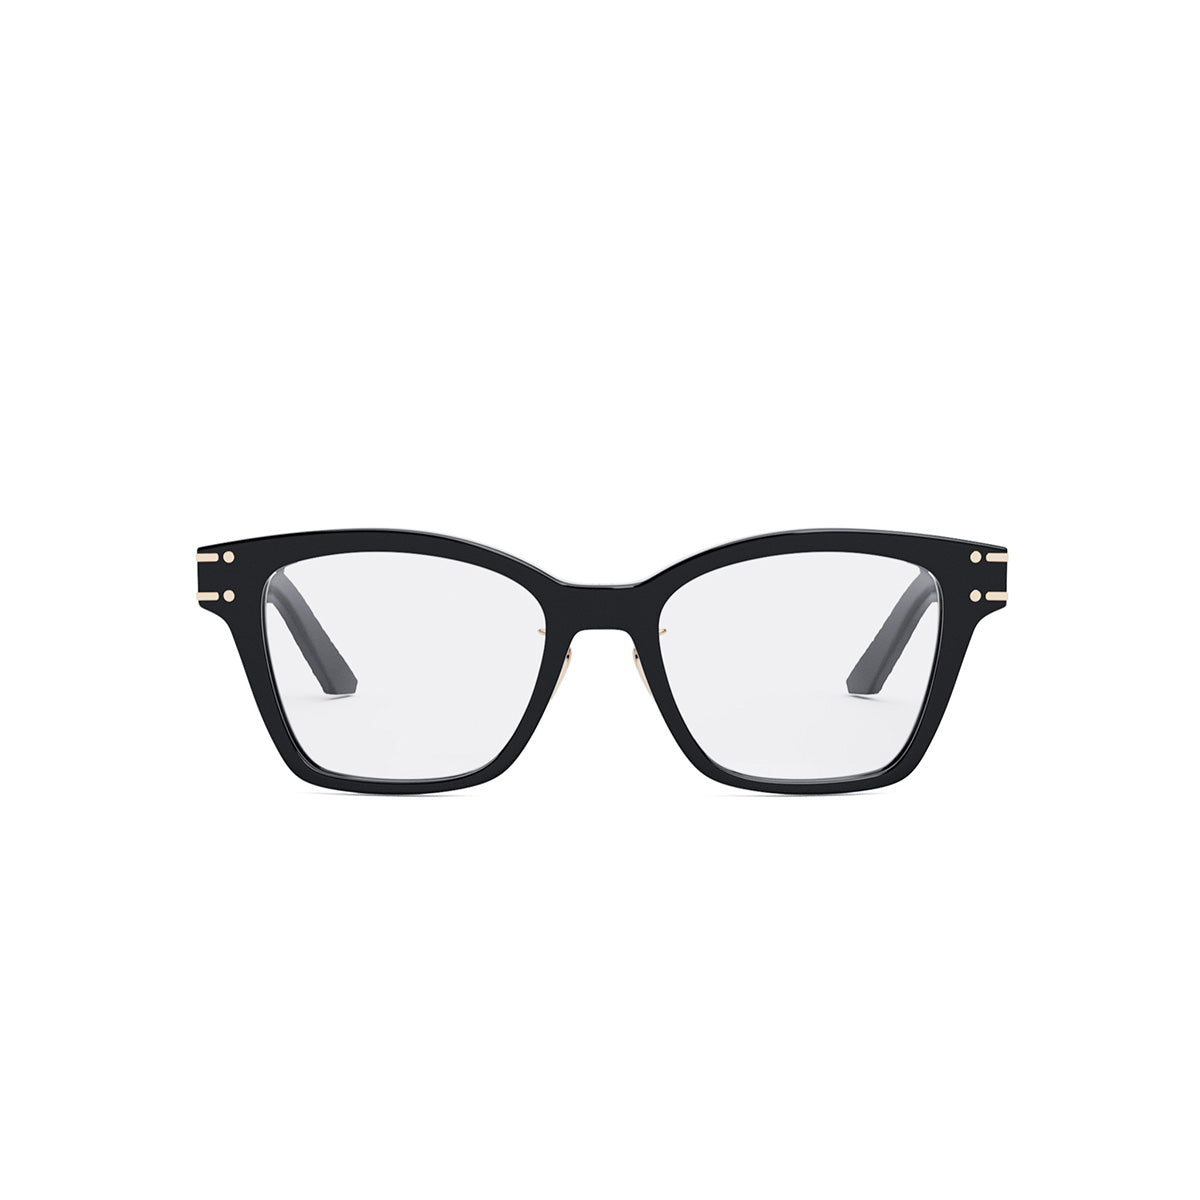 Dior DiorSignatureO S2F Square Eyeglasses, 53mm - Black